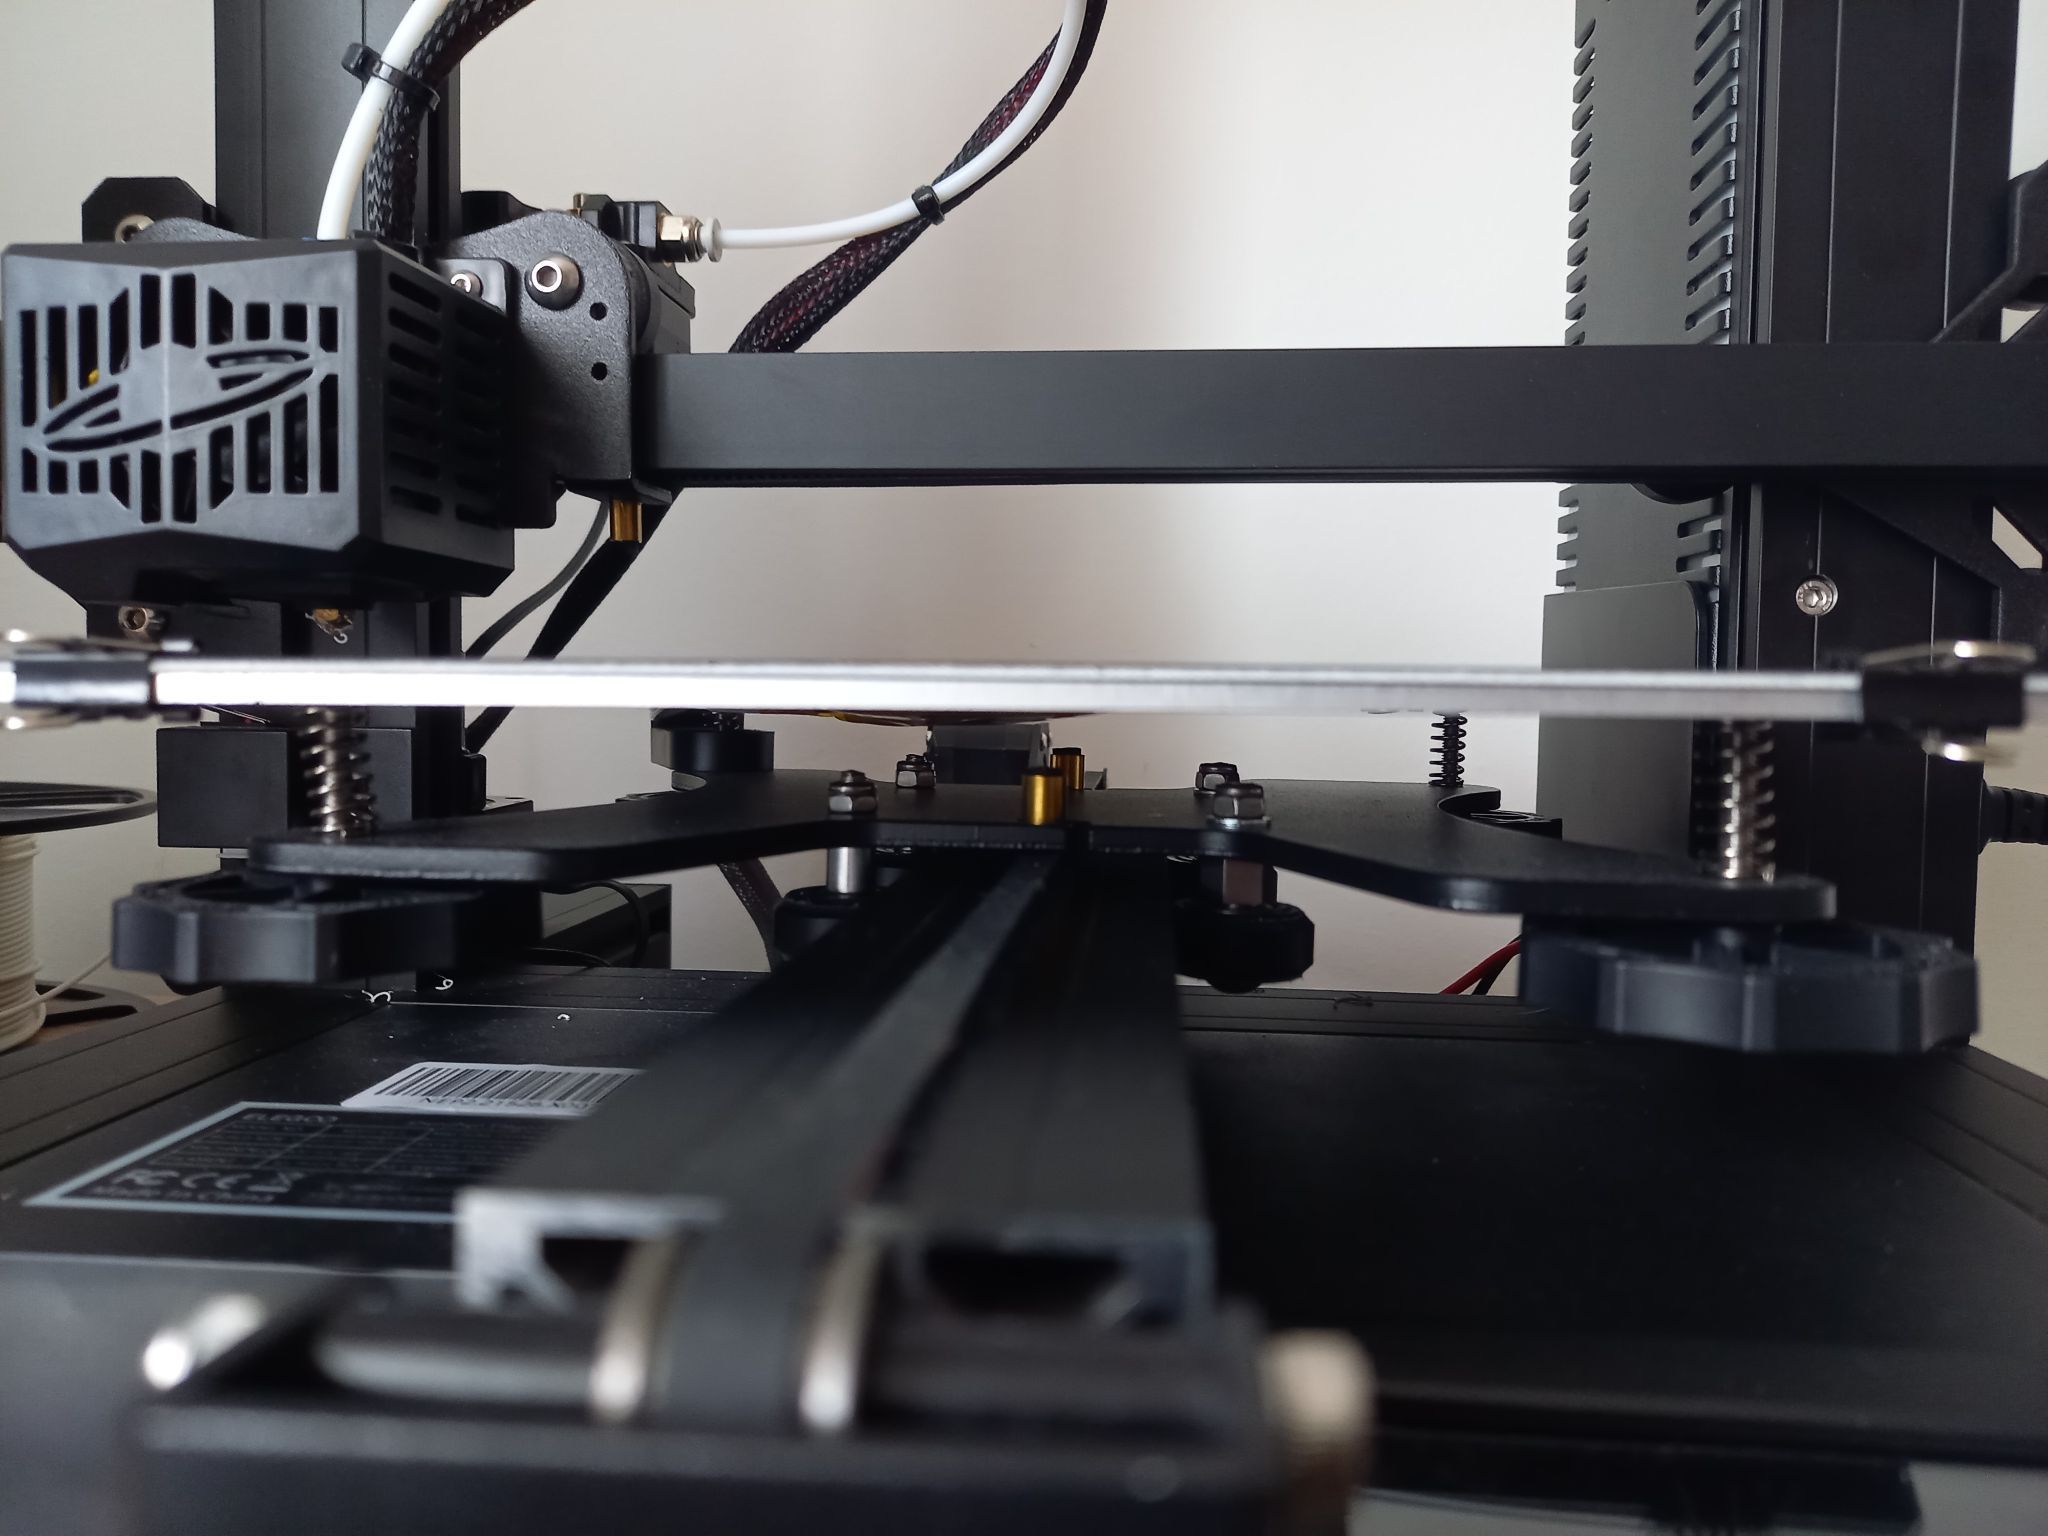 problème de leveling avec BL Touch - Discussion sur les imprimantes 3D -  Forum pour les imprimantes 3D et l'impression 3D